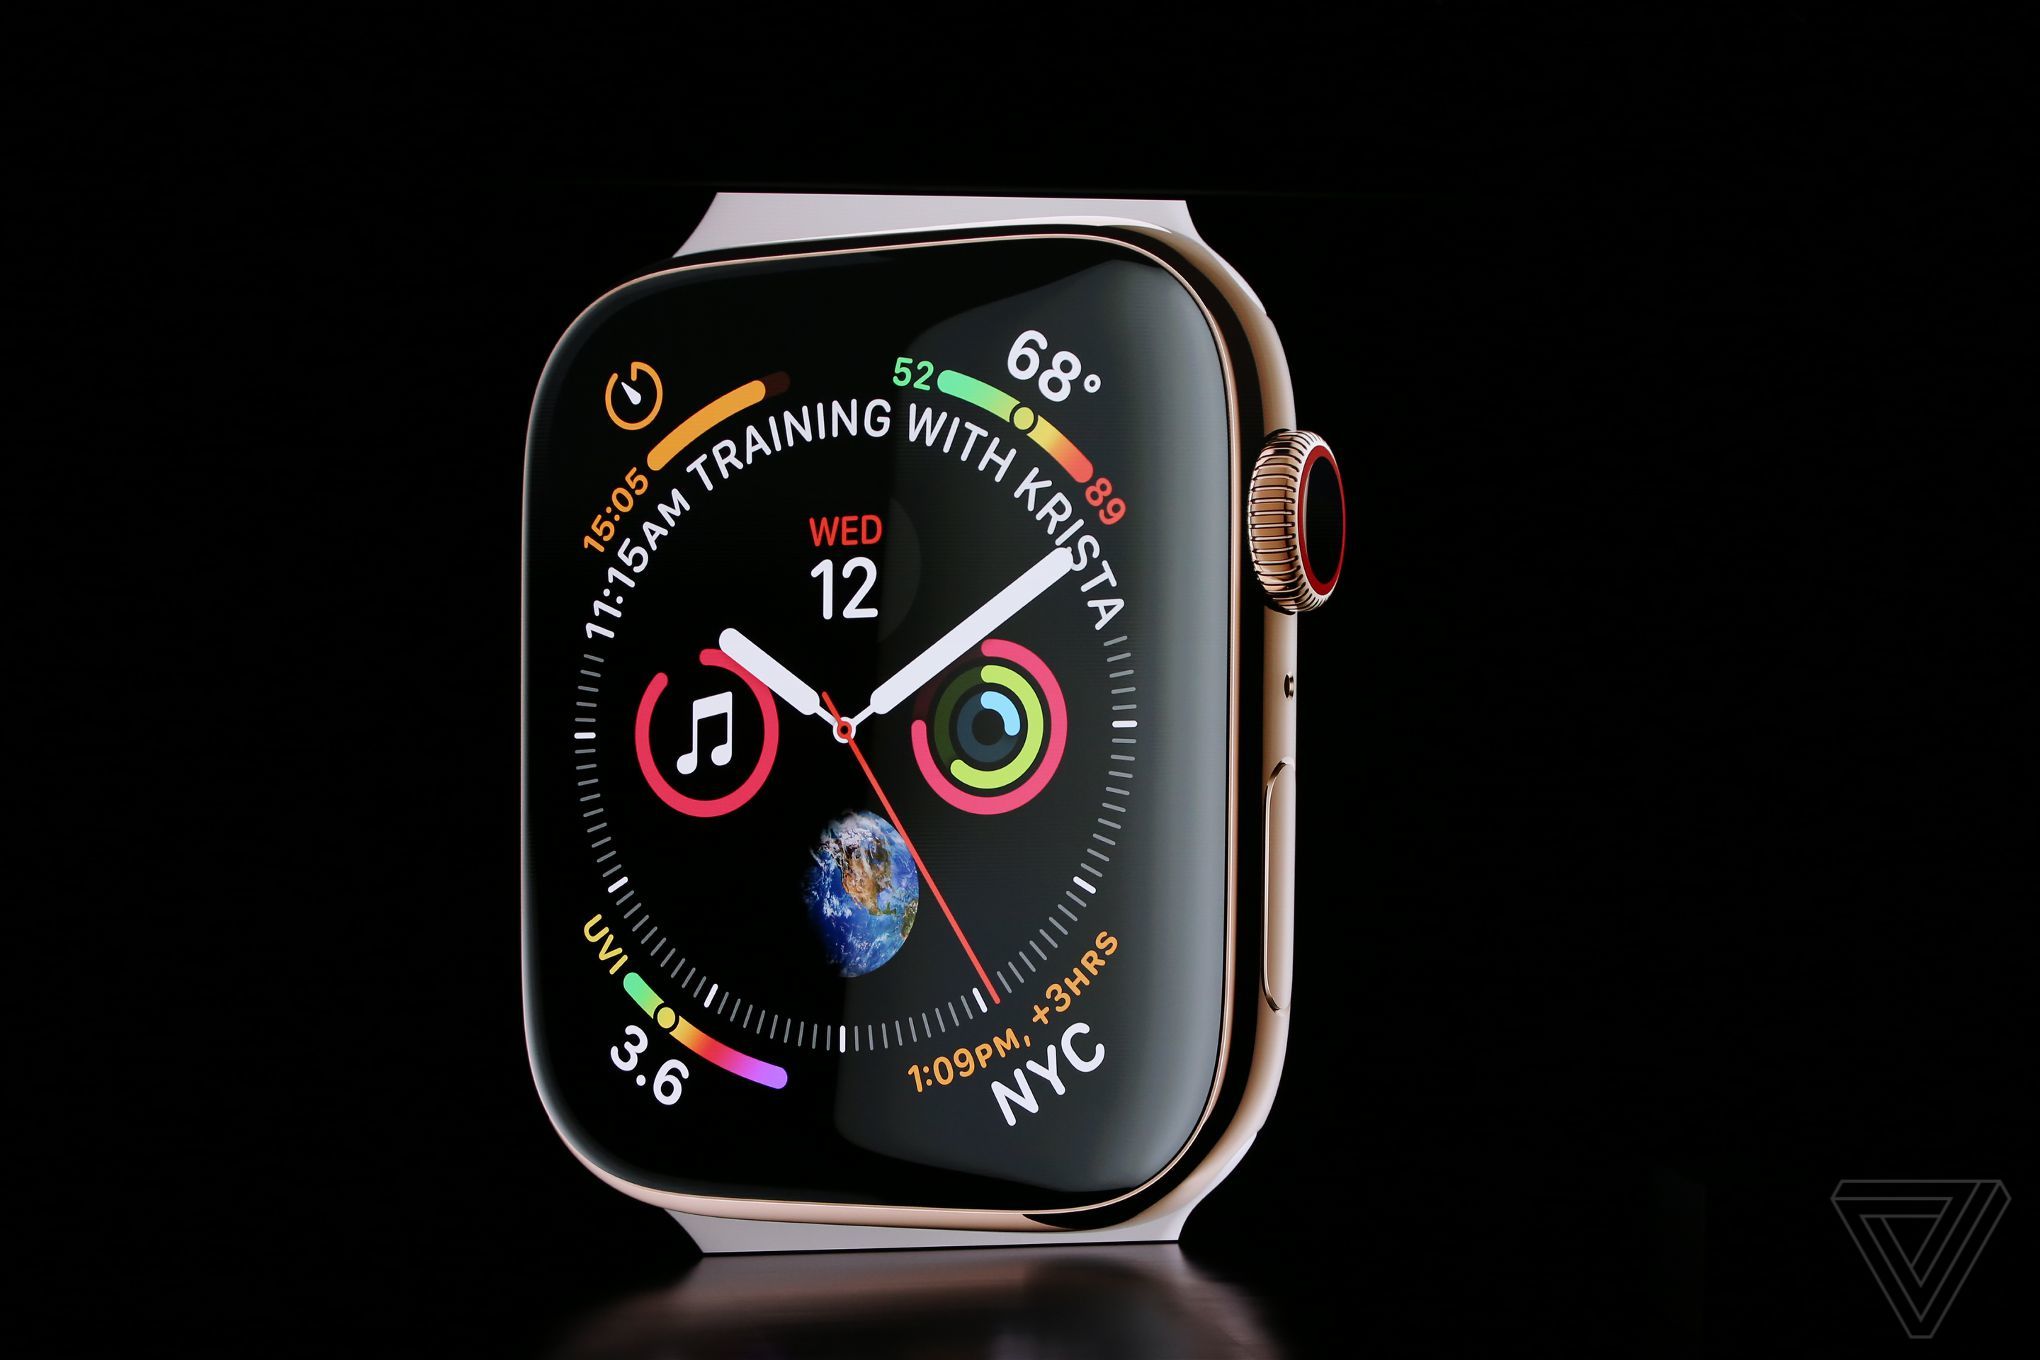 Apple Watch: 4,2 Mio. ausgelieferte Exemplare in Q3 2018 1